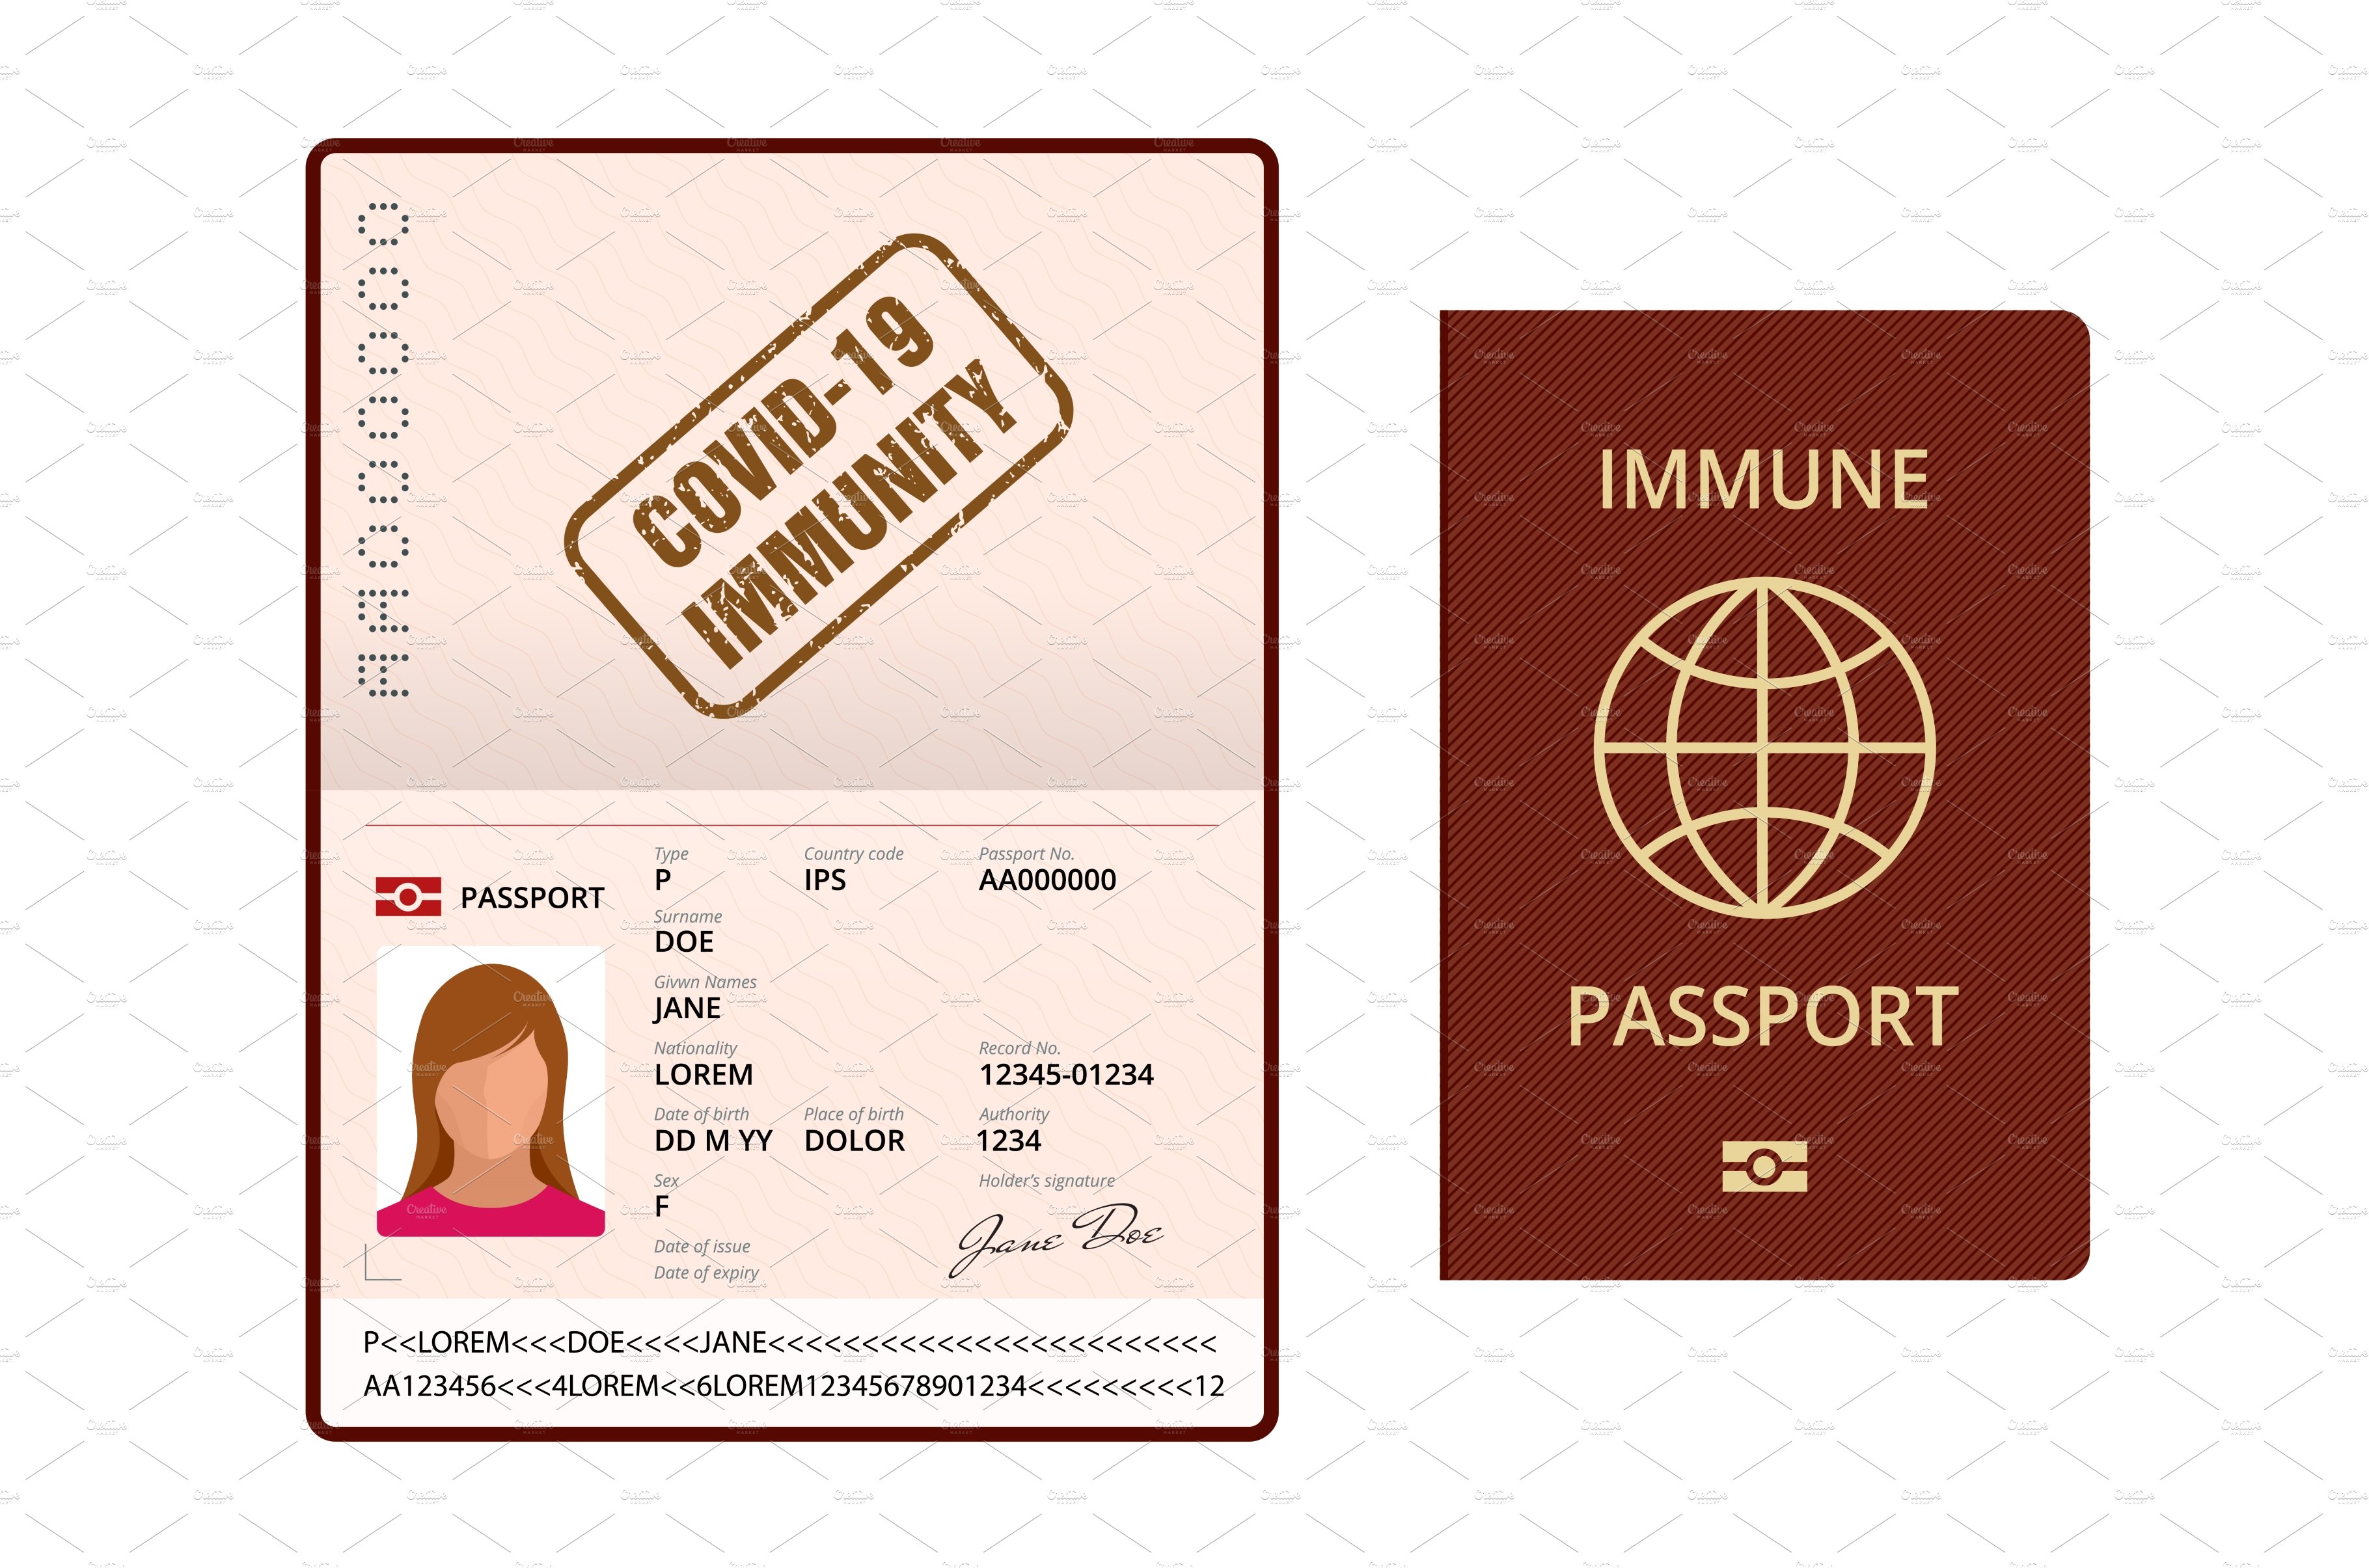 COVID-19 Immunity Passport, immunity cover image.